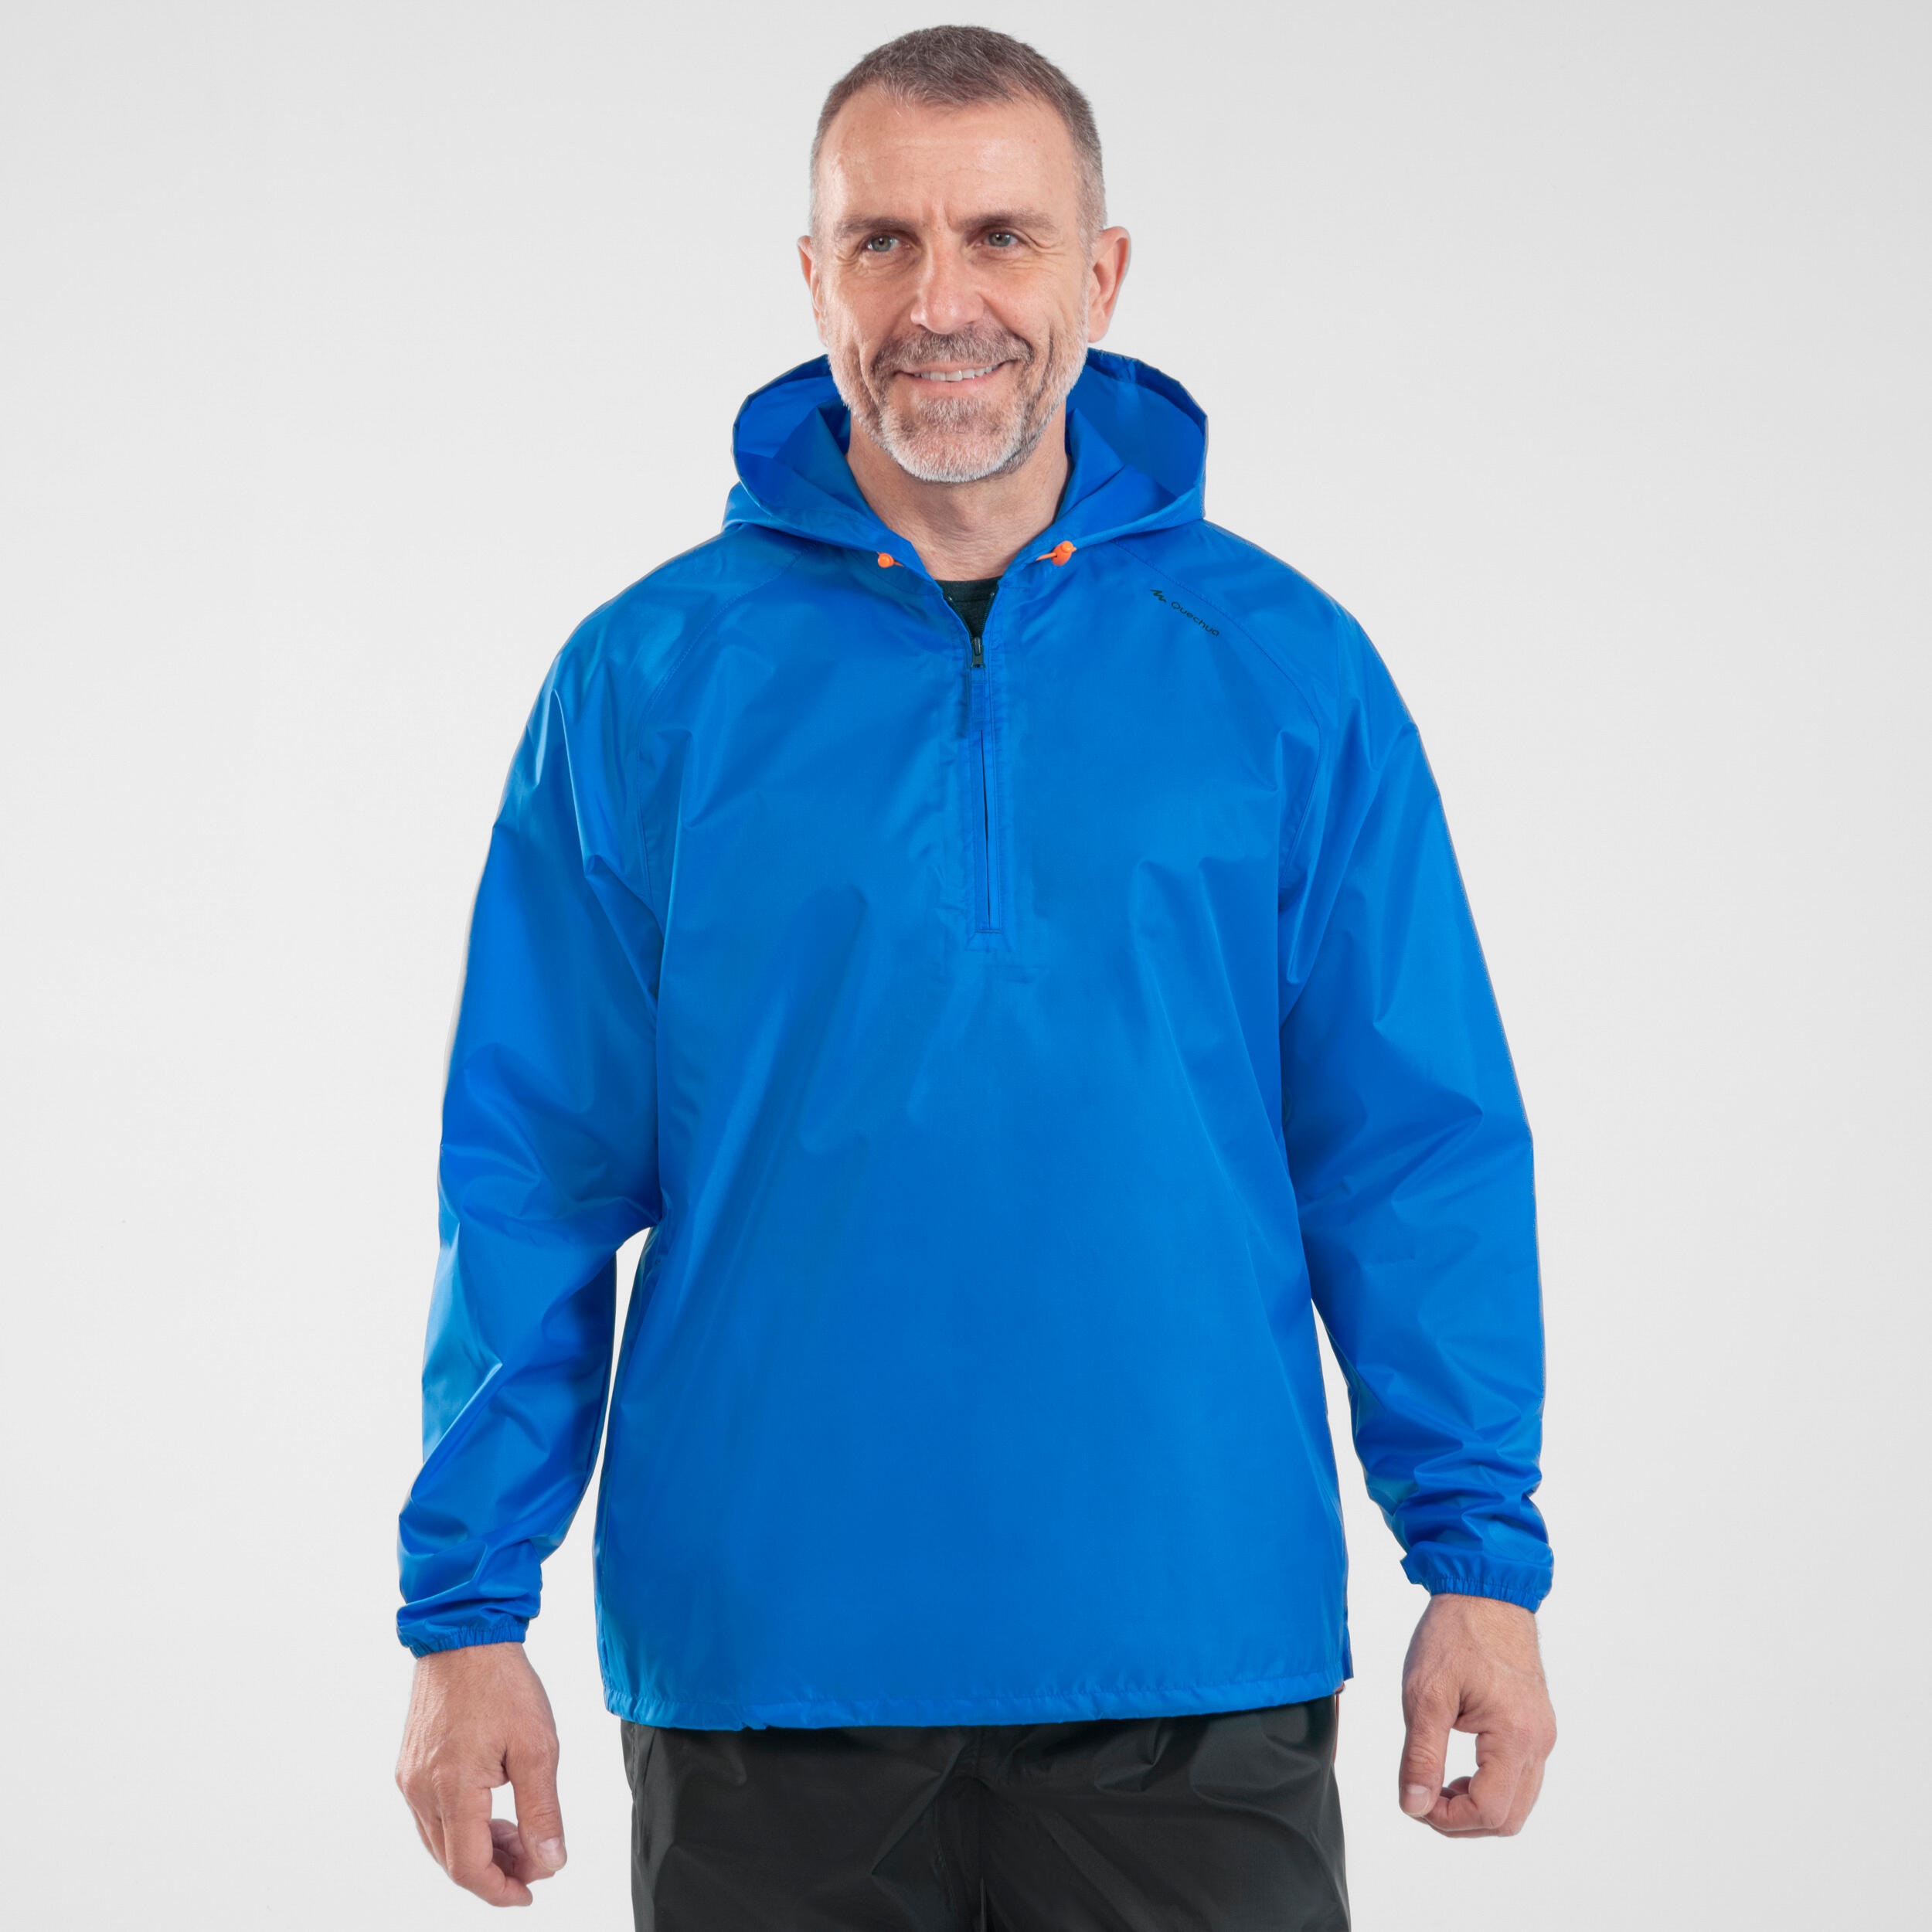 Men's Windproof and Water-repellent Hiking Jacket - Raincut 1/2 Zip 6/15